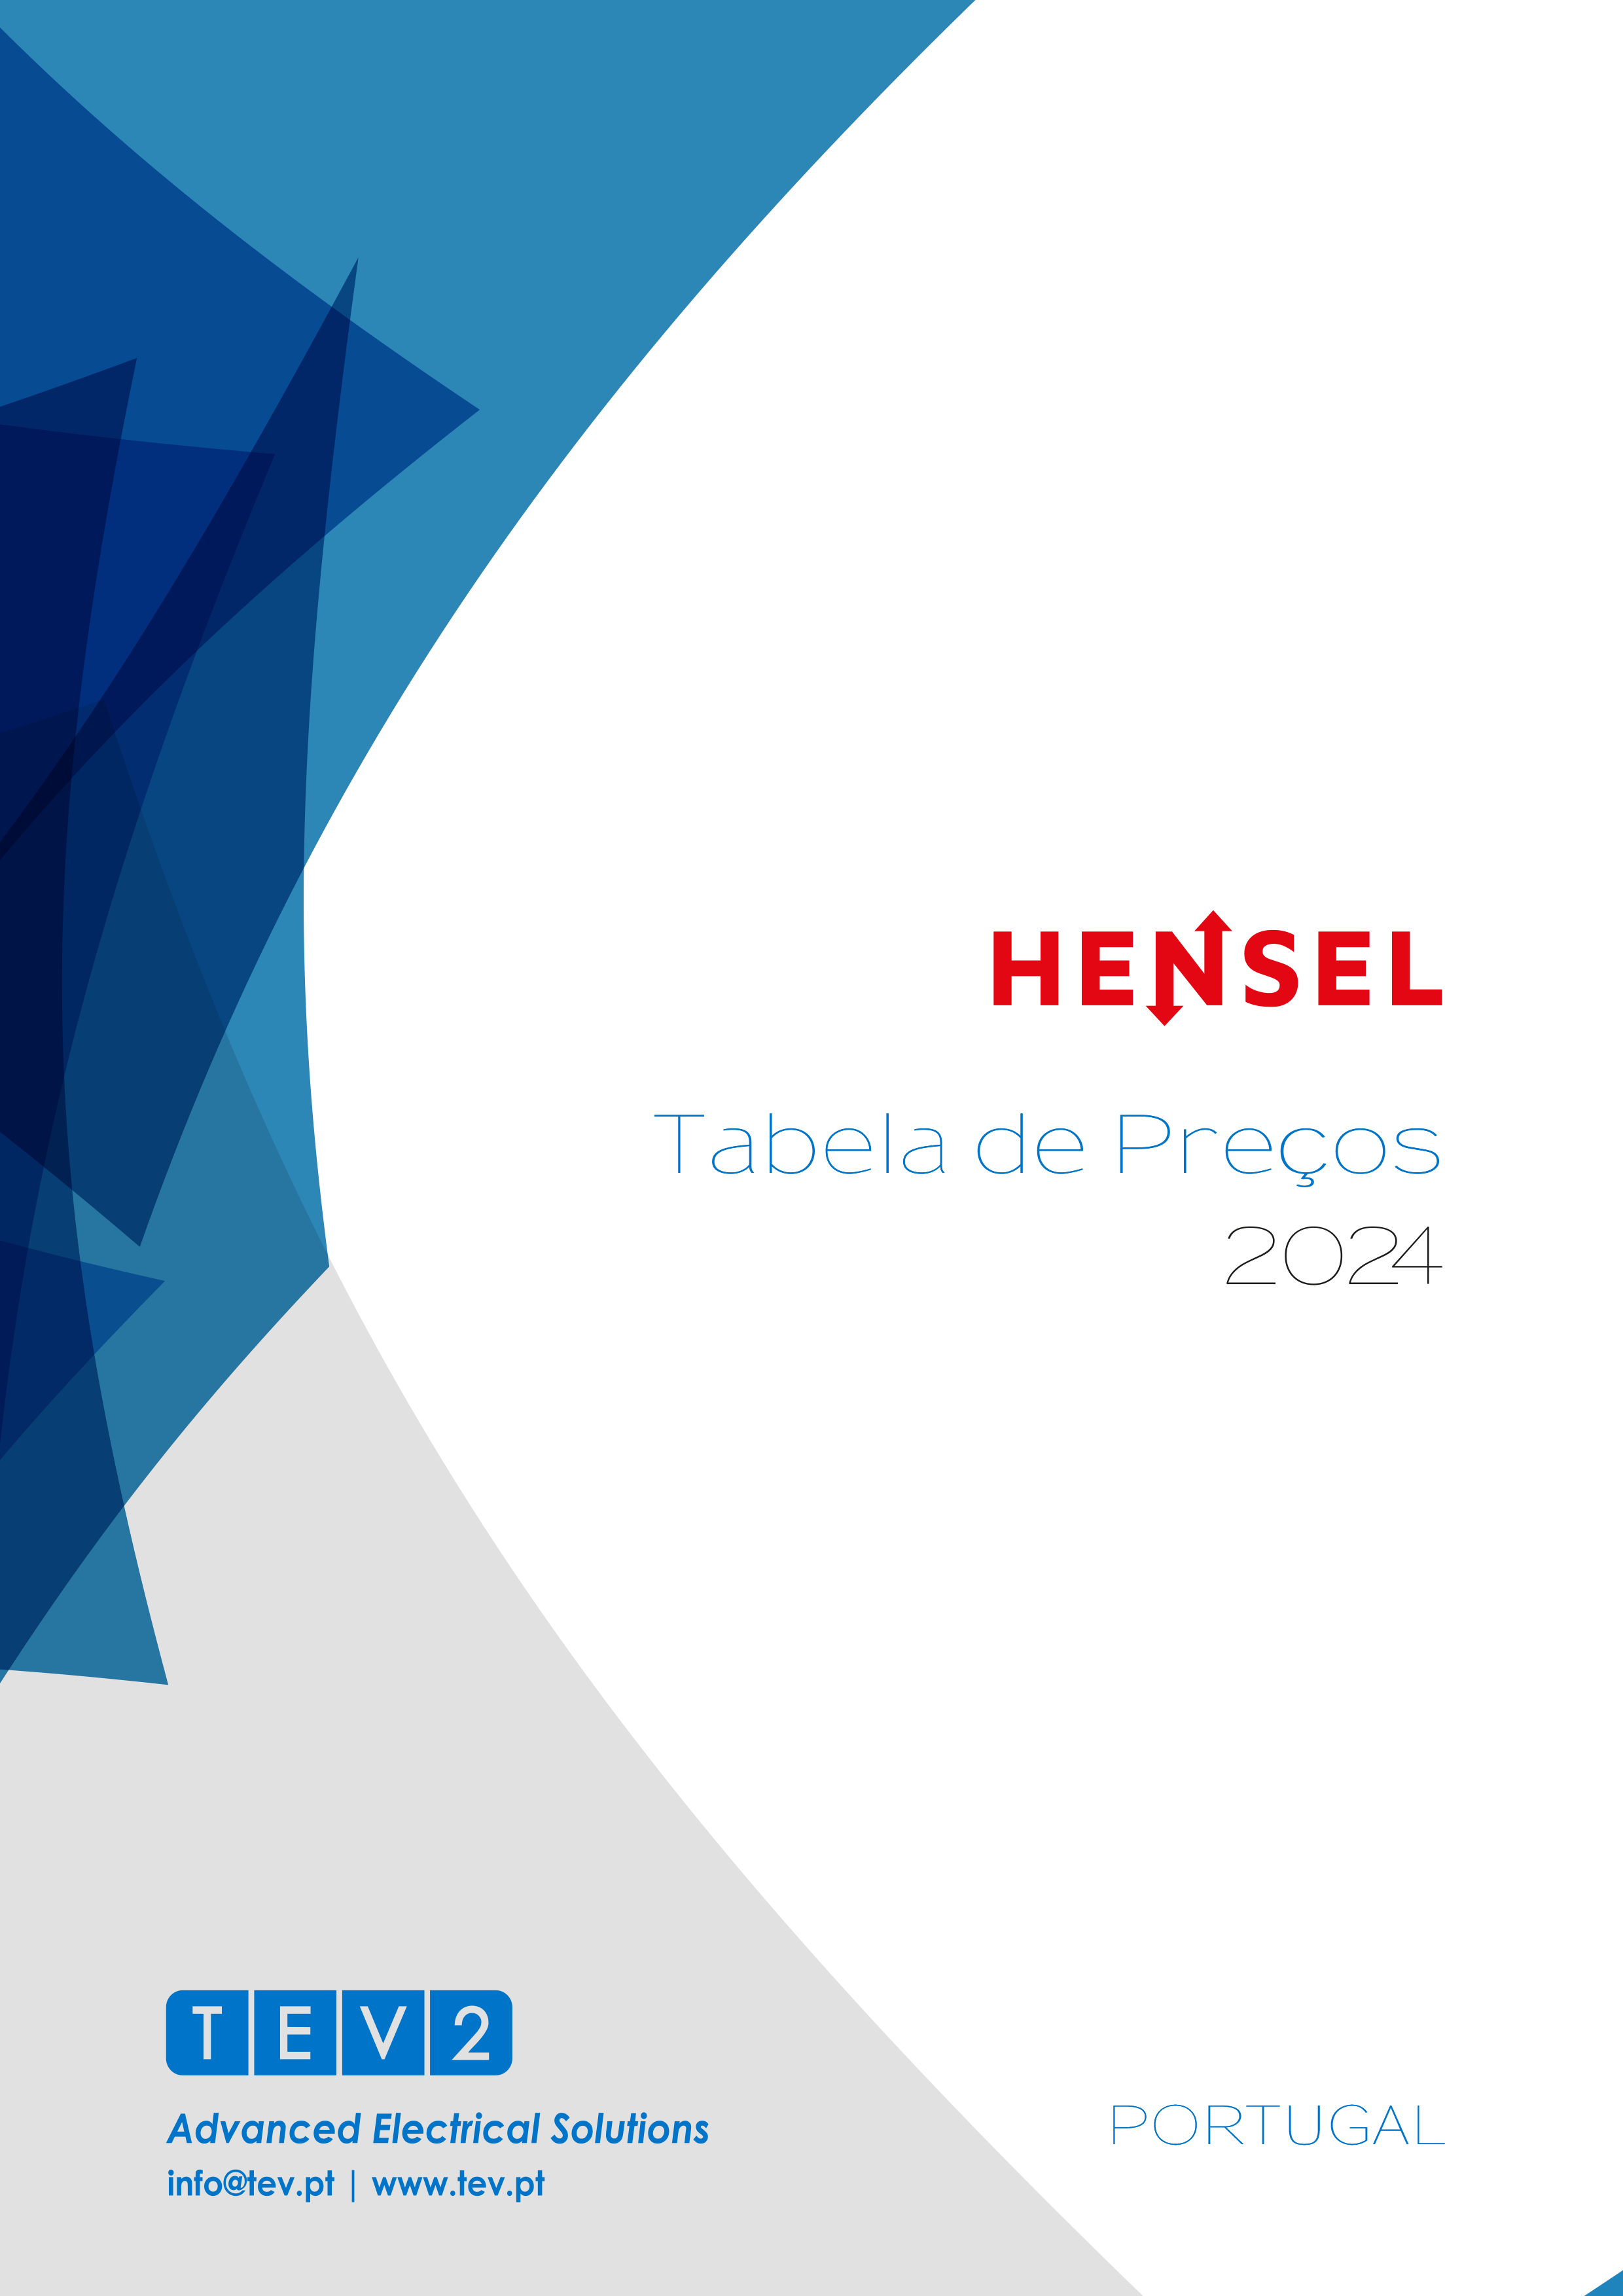 Tabela da Hensel 2024 (em vigor a partir de 01.01.2024)